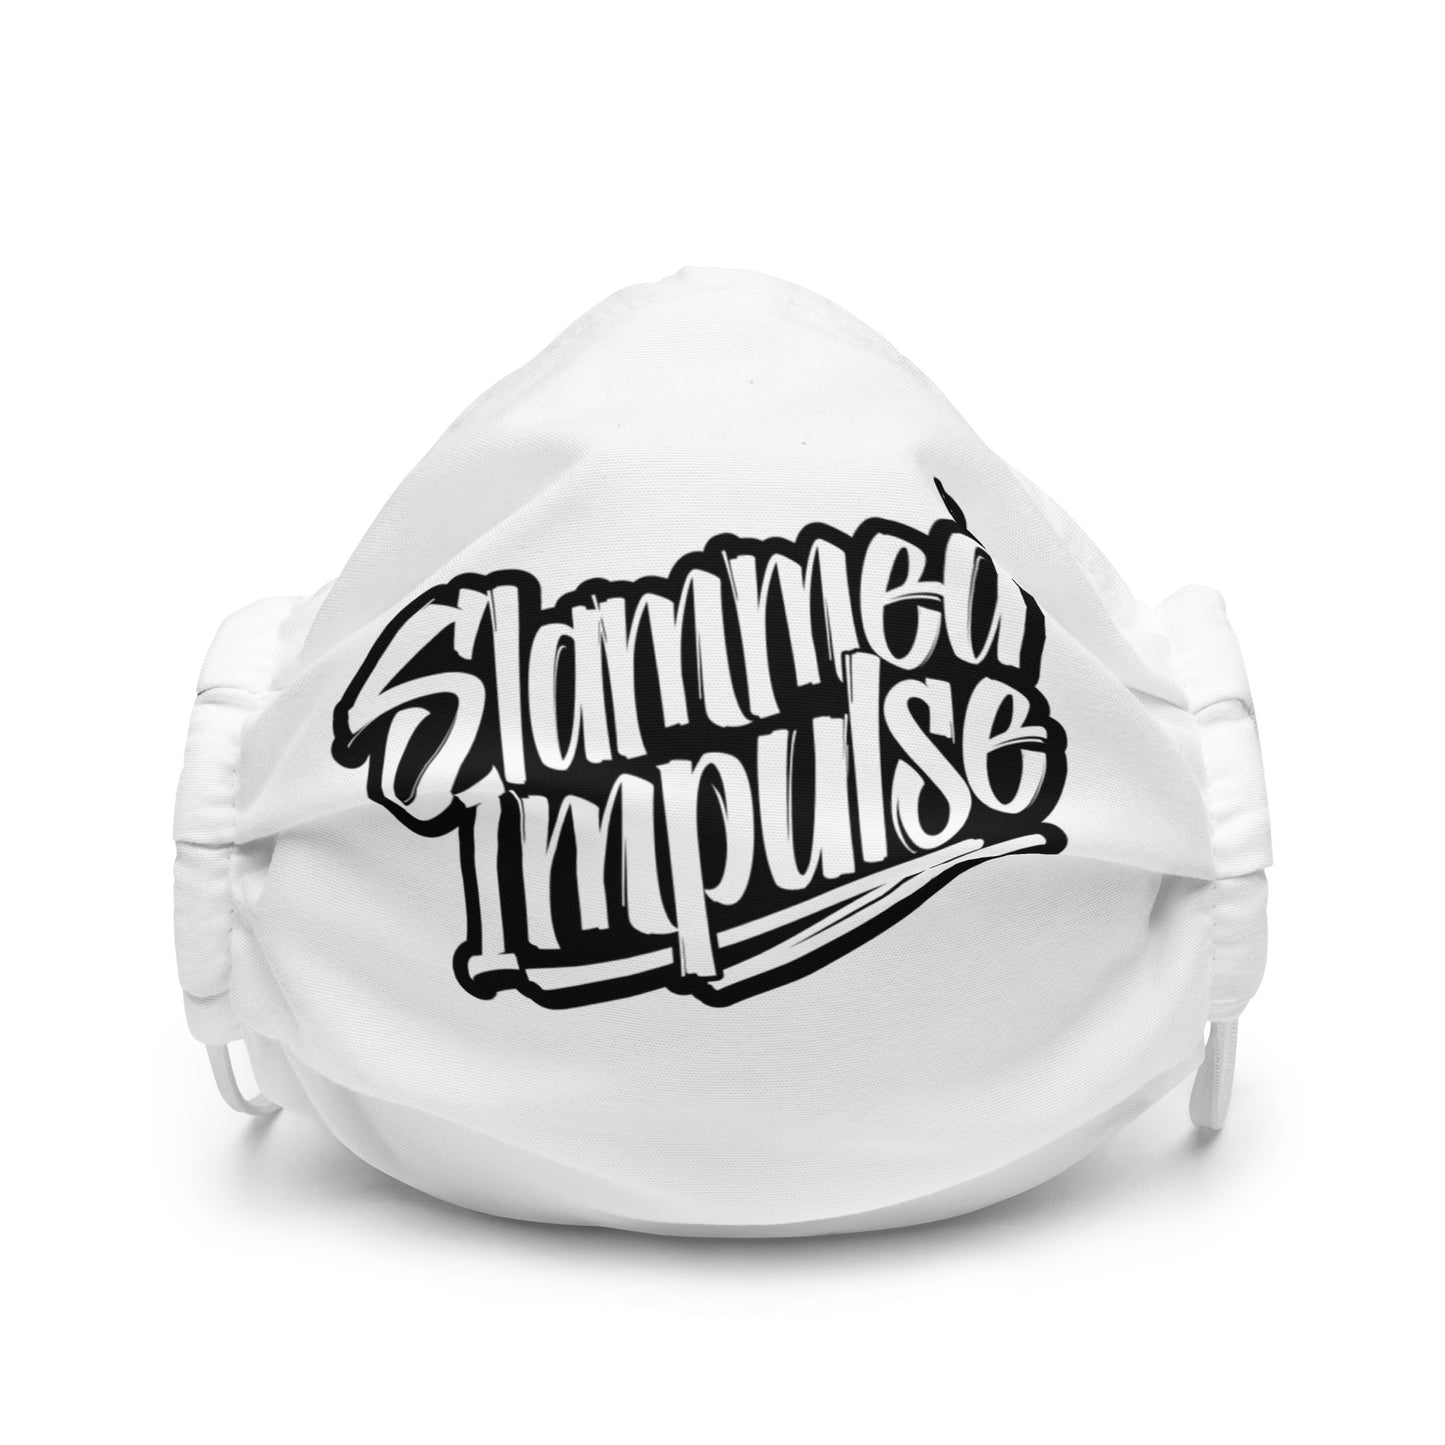 (BLACK/WHITE) Official Slammed Impulse Logo Masks